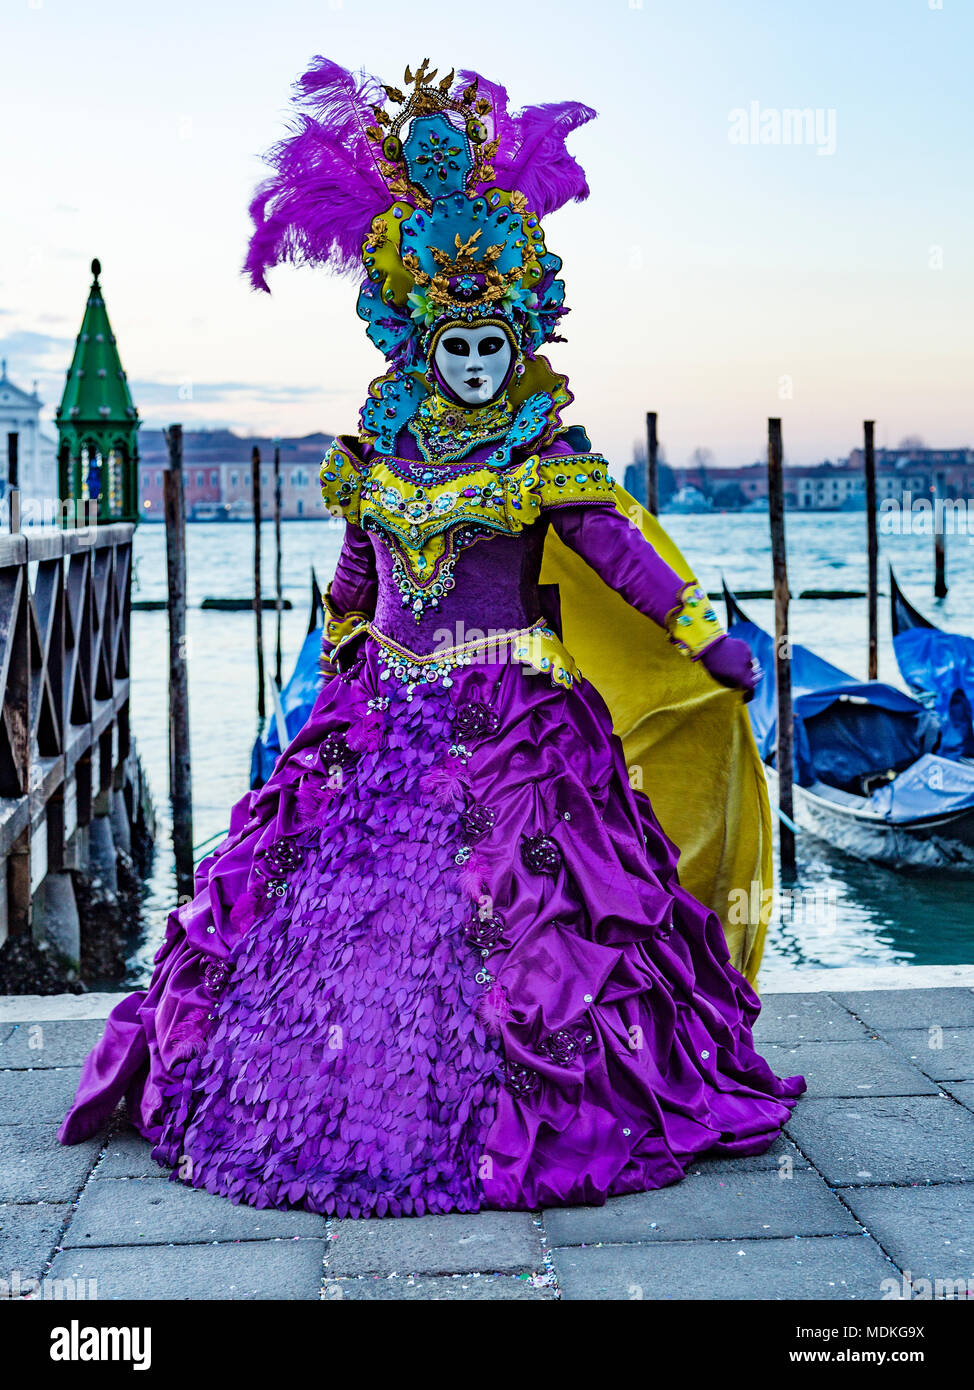 Carnival costumes immagini e fotografie stock ad alta risoluzione - Alamy